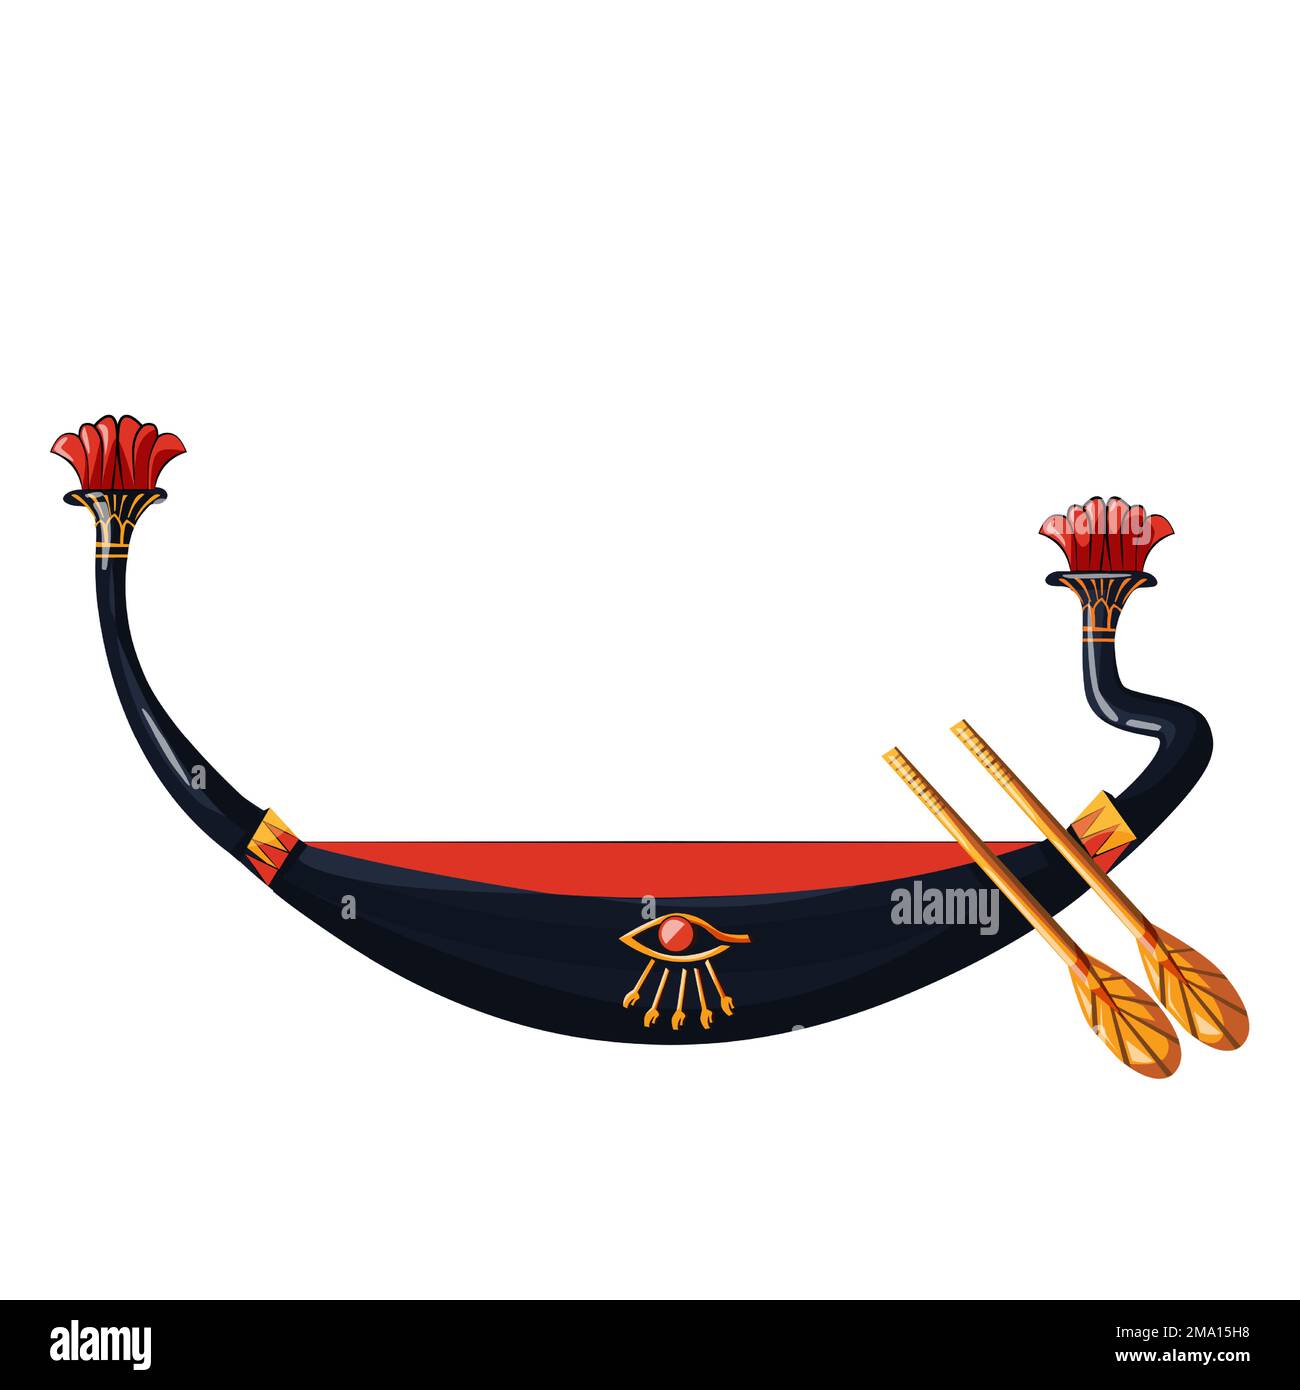 Antico Egitto barca di legno con pagaia per sole dio viaggio cartone animato illustrazione vettore. Simbolo religioso della cultura egiziana, barque decorato con rospo per il Dio antico, metafora del cambiamento di giorno e di notte Illustrazione Vettoriale